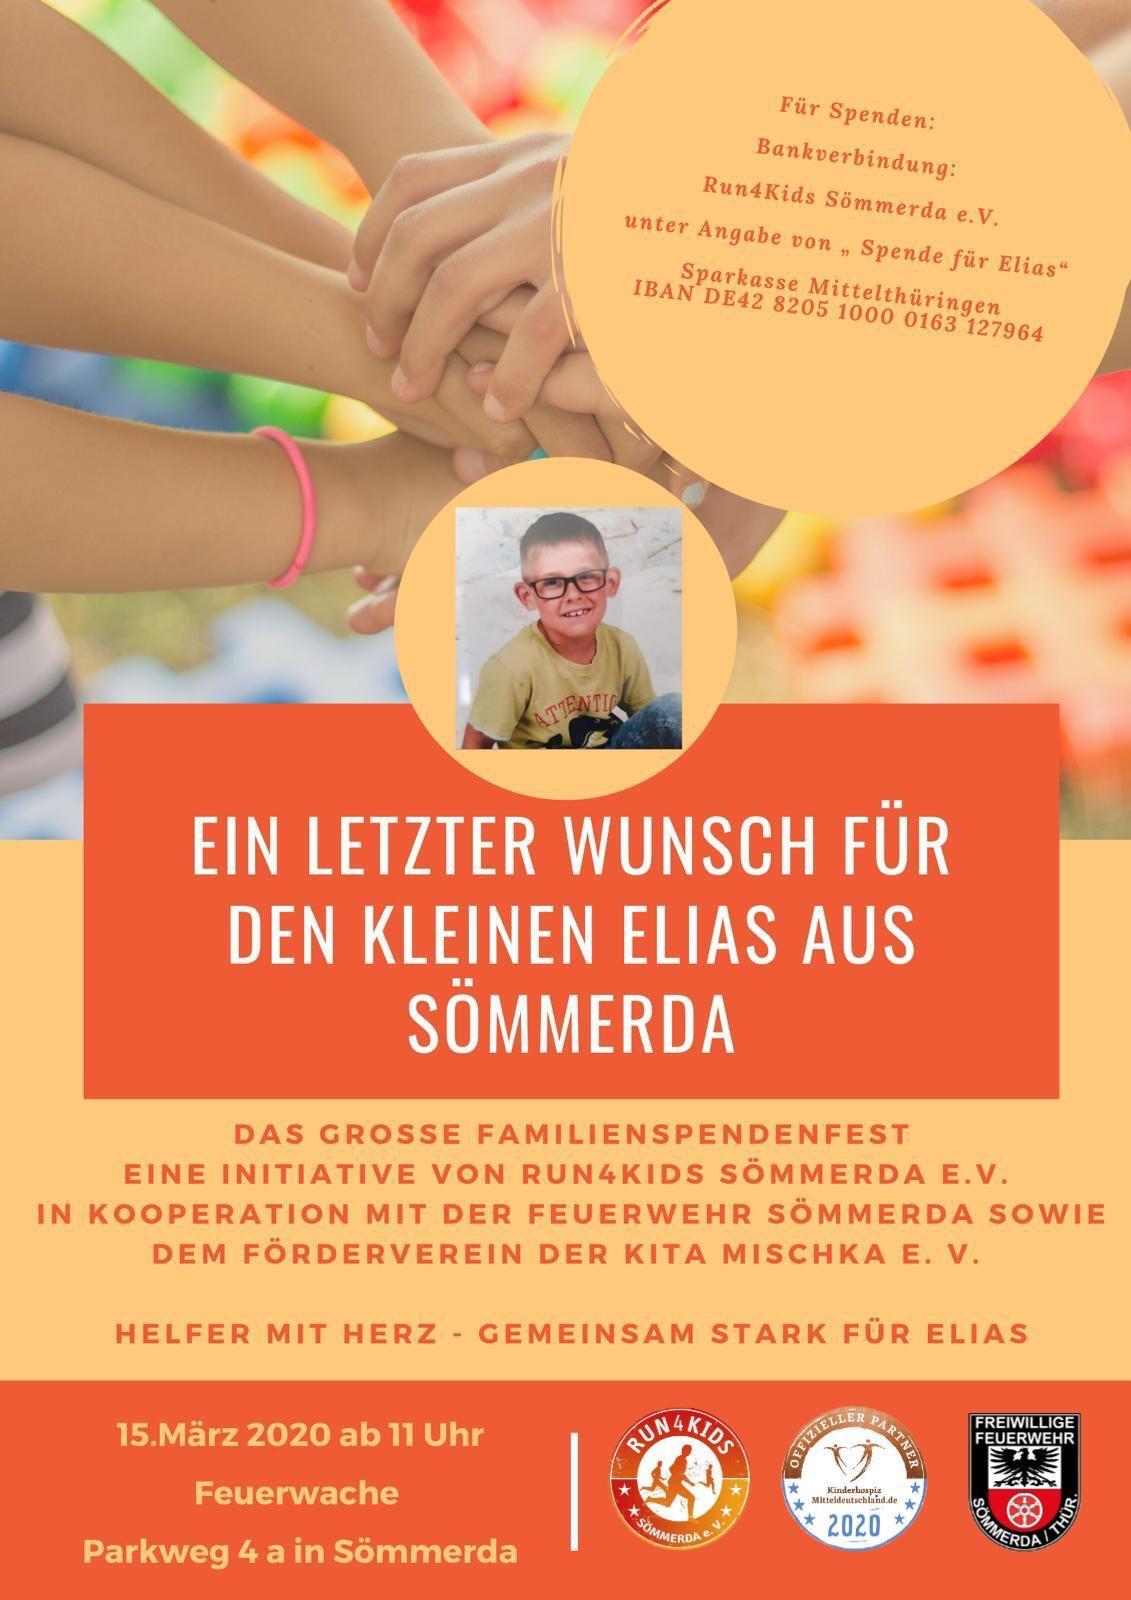 Familienspendenfest / Feuerwache Sömmerda zugunsten des kleinen 7-jährigen Elias aus Sömmerda